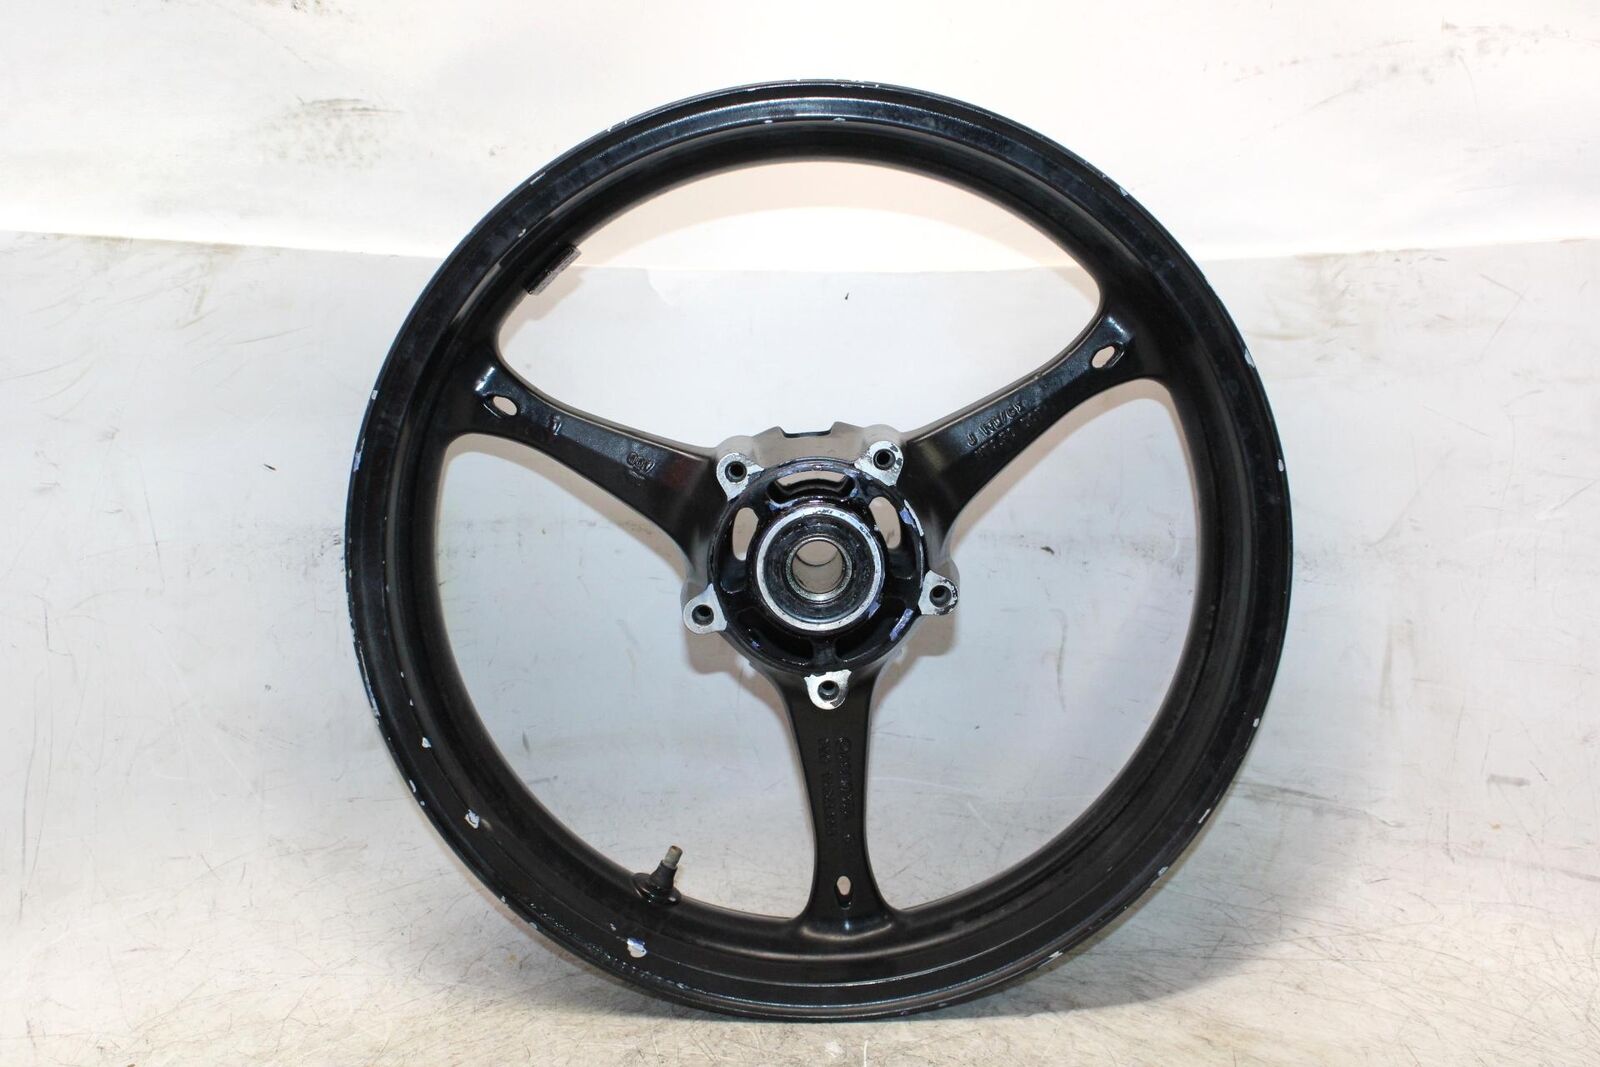 2008 Suzuki Gsxr1000 Front Wheel Rim